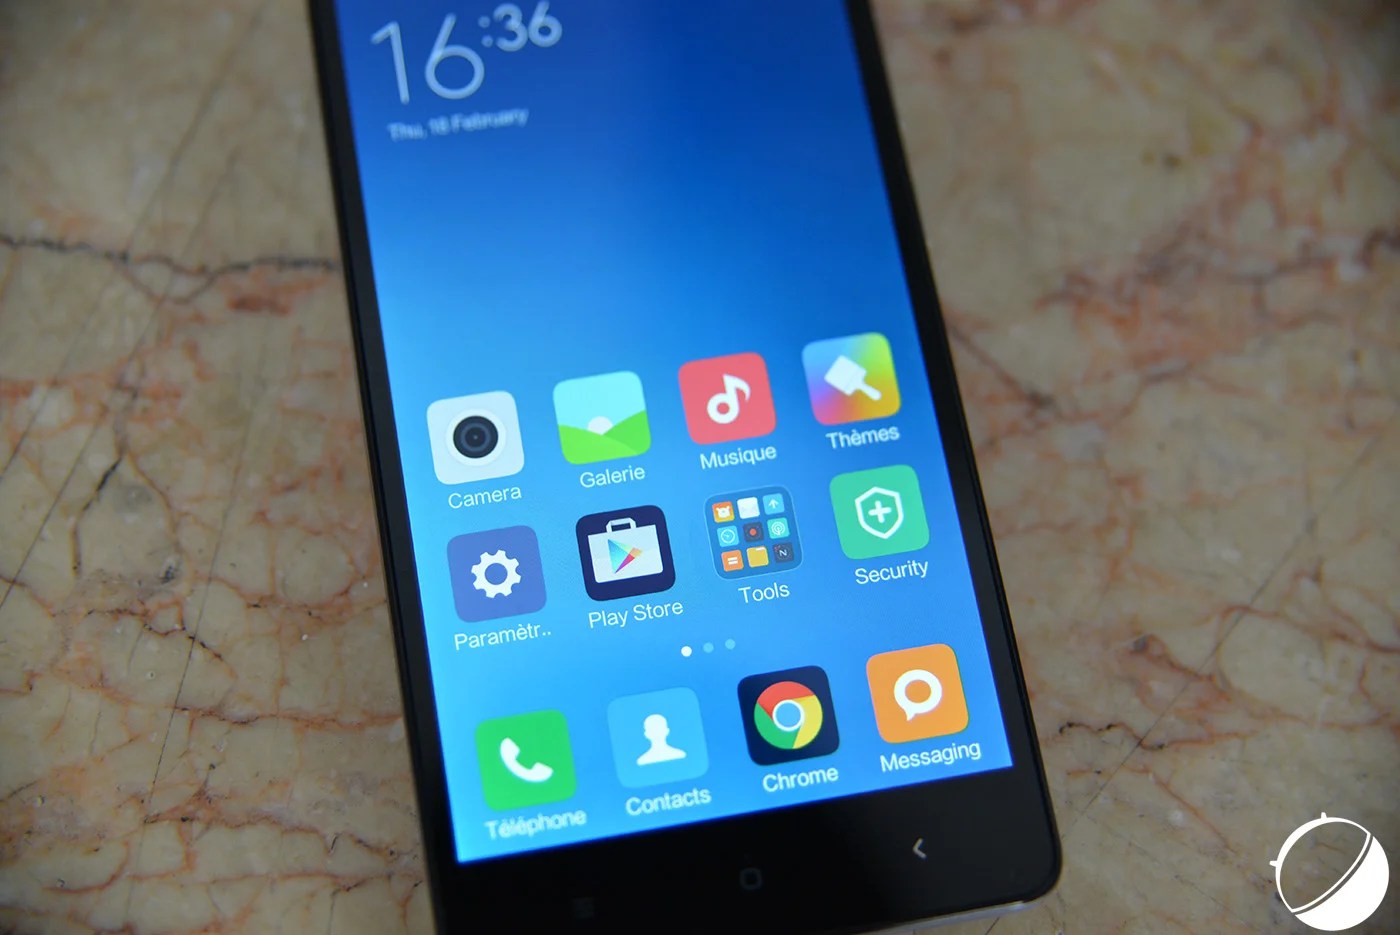 Xiaomi commercialise enfin des smartphones compatibles avec la 4G 800 MHz